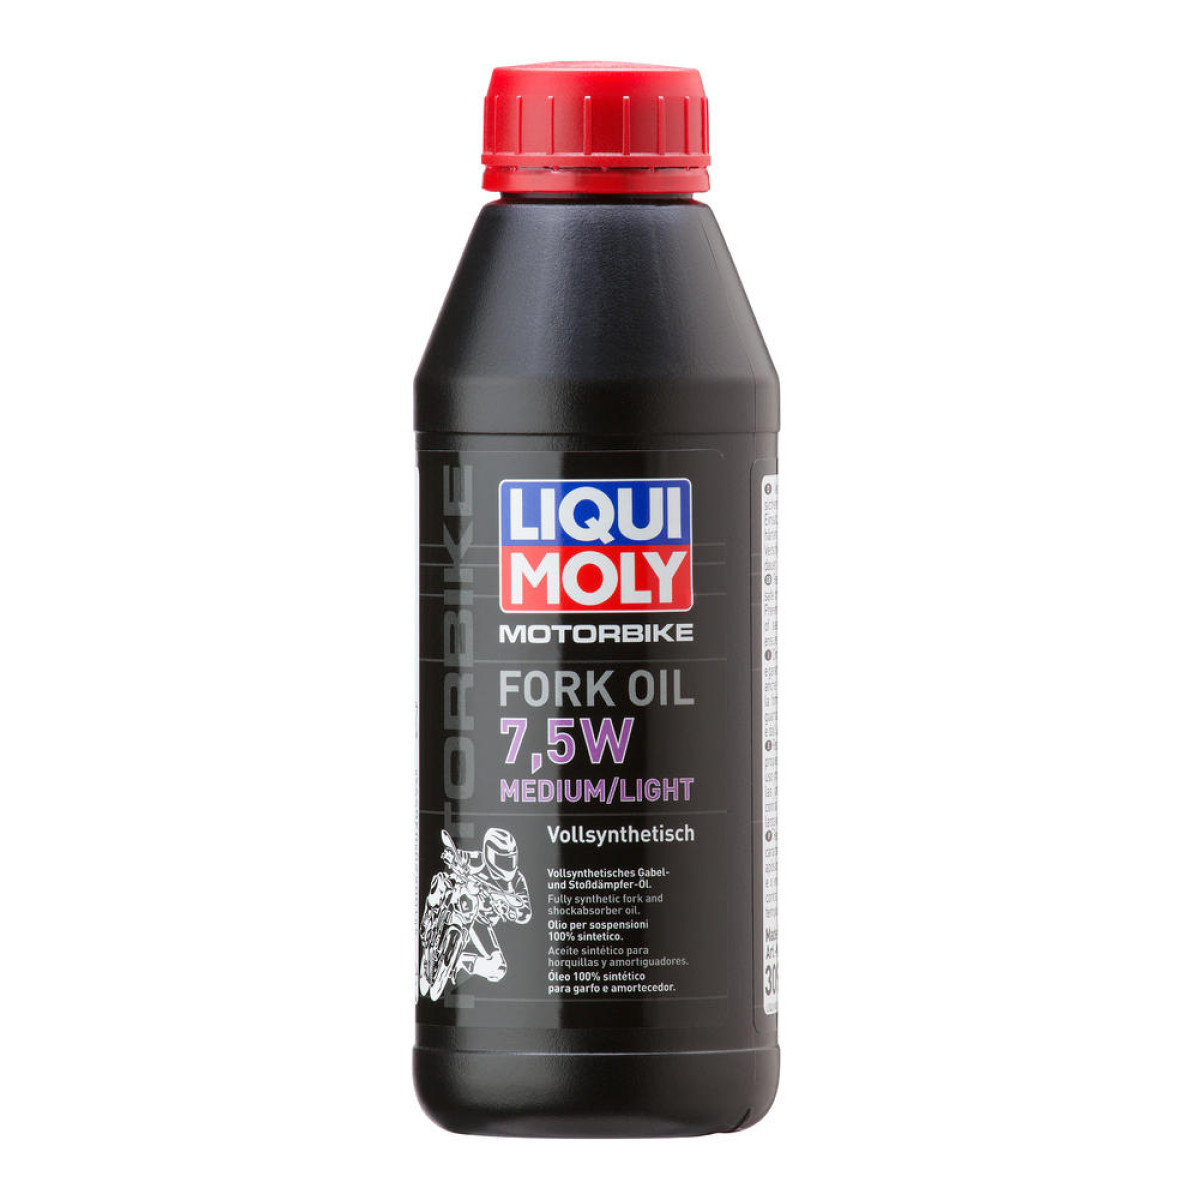 Liqui Moly Olio Cambio  Medium/Light, 7.5W, 1 Liter